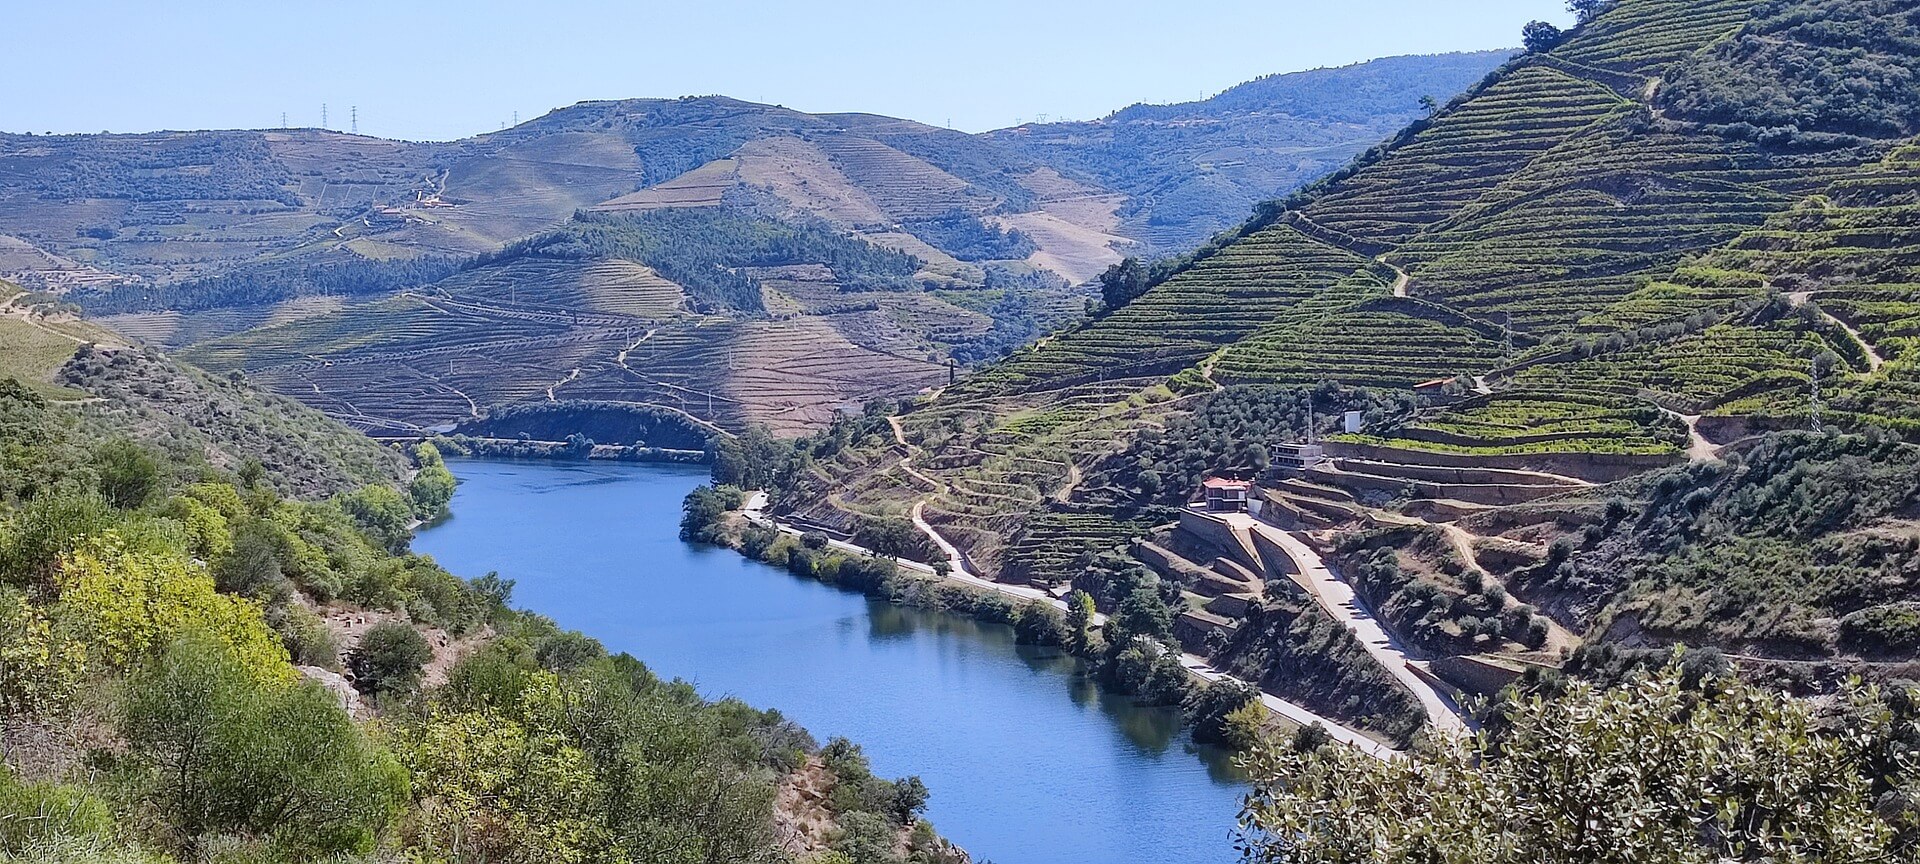 Douro Wines